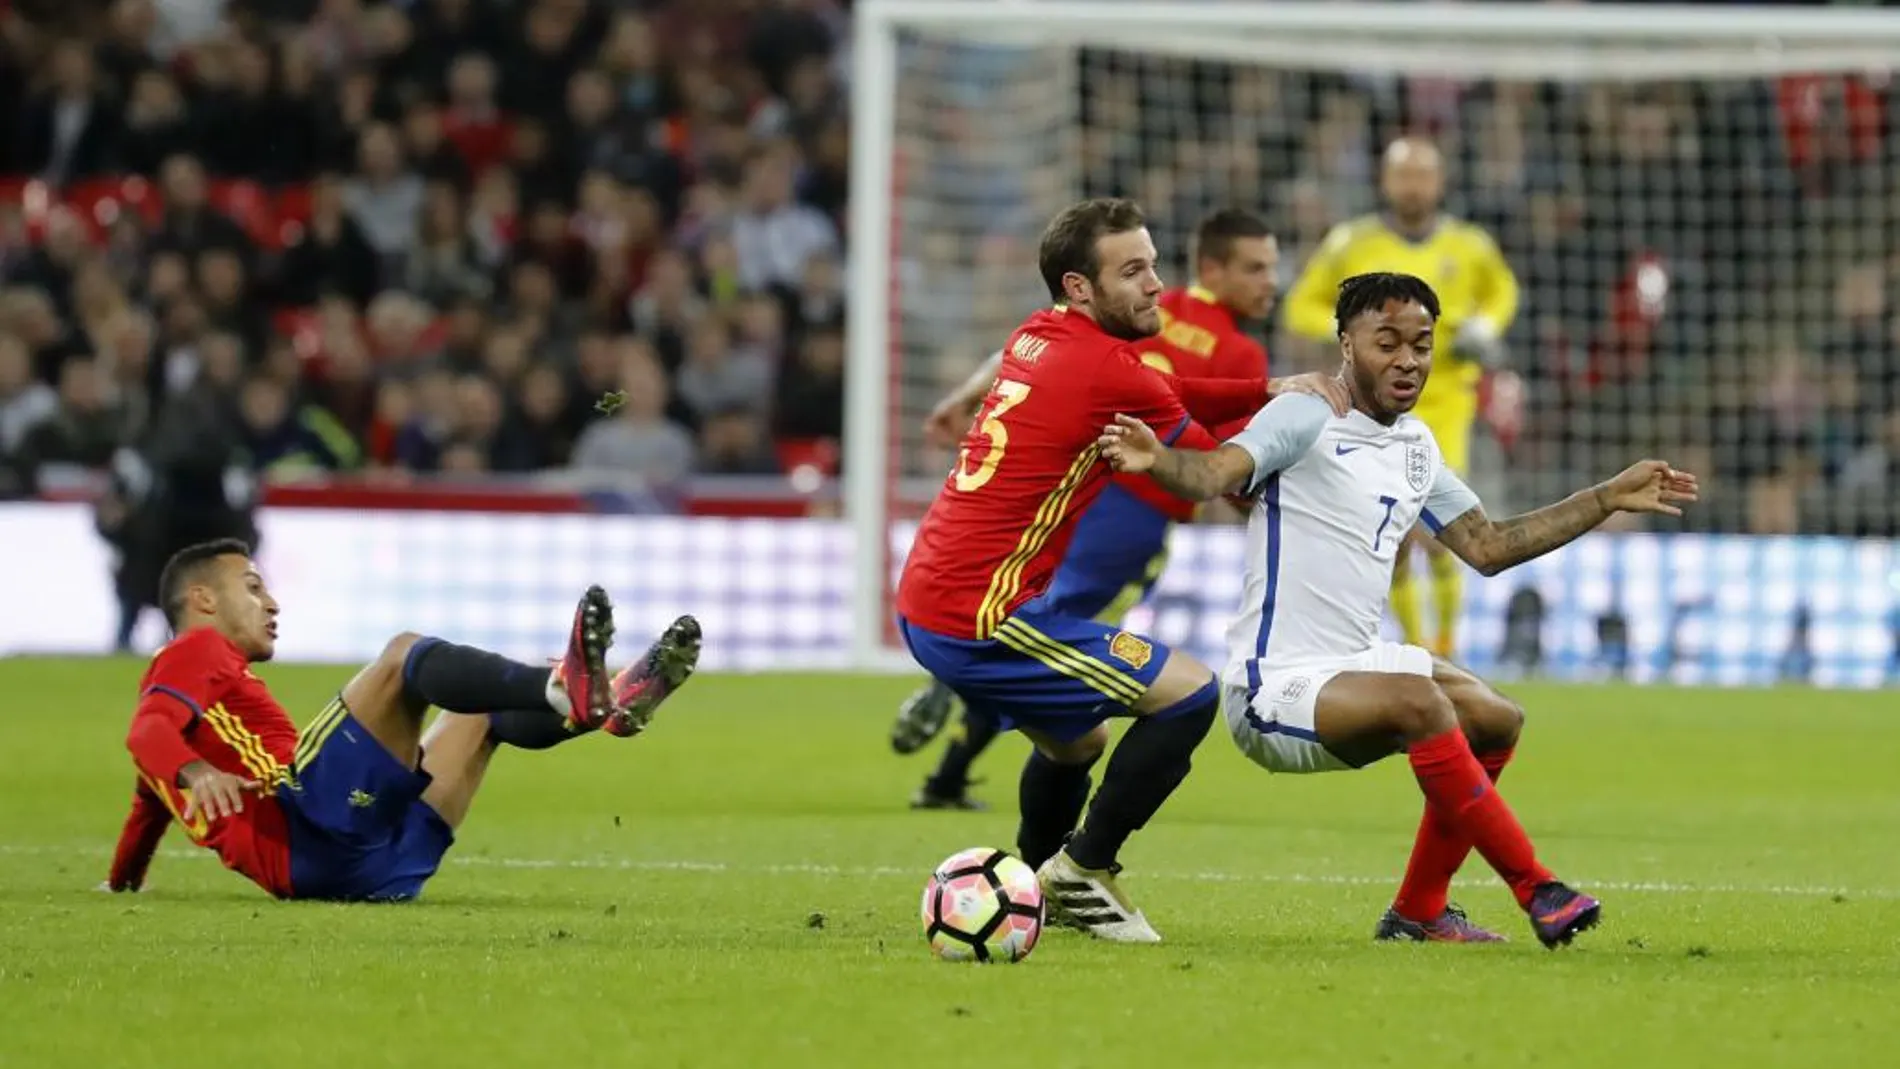 El delantero de la selección española Juan Manuel Mata disputa un balón con el centrocampista de la selección de Inglaterra Raheem Sterling